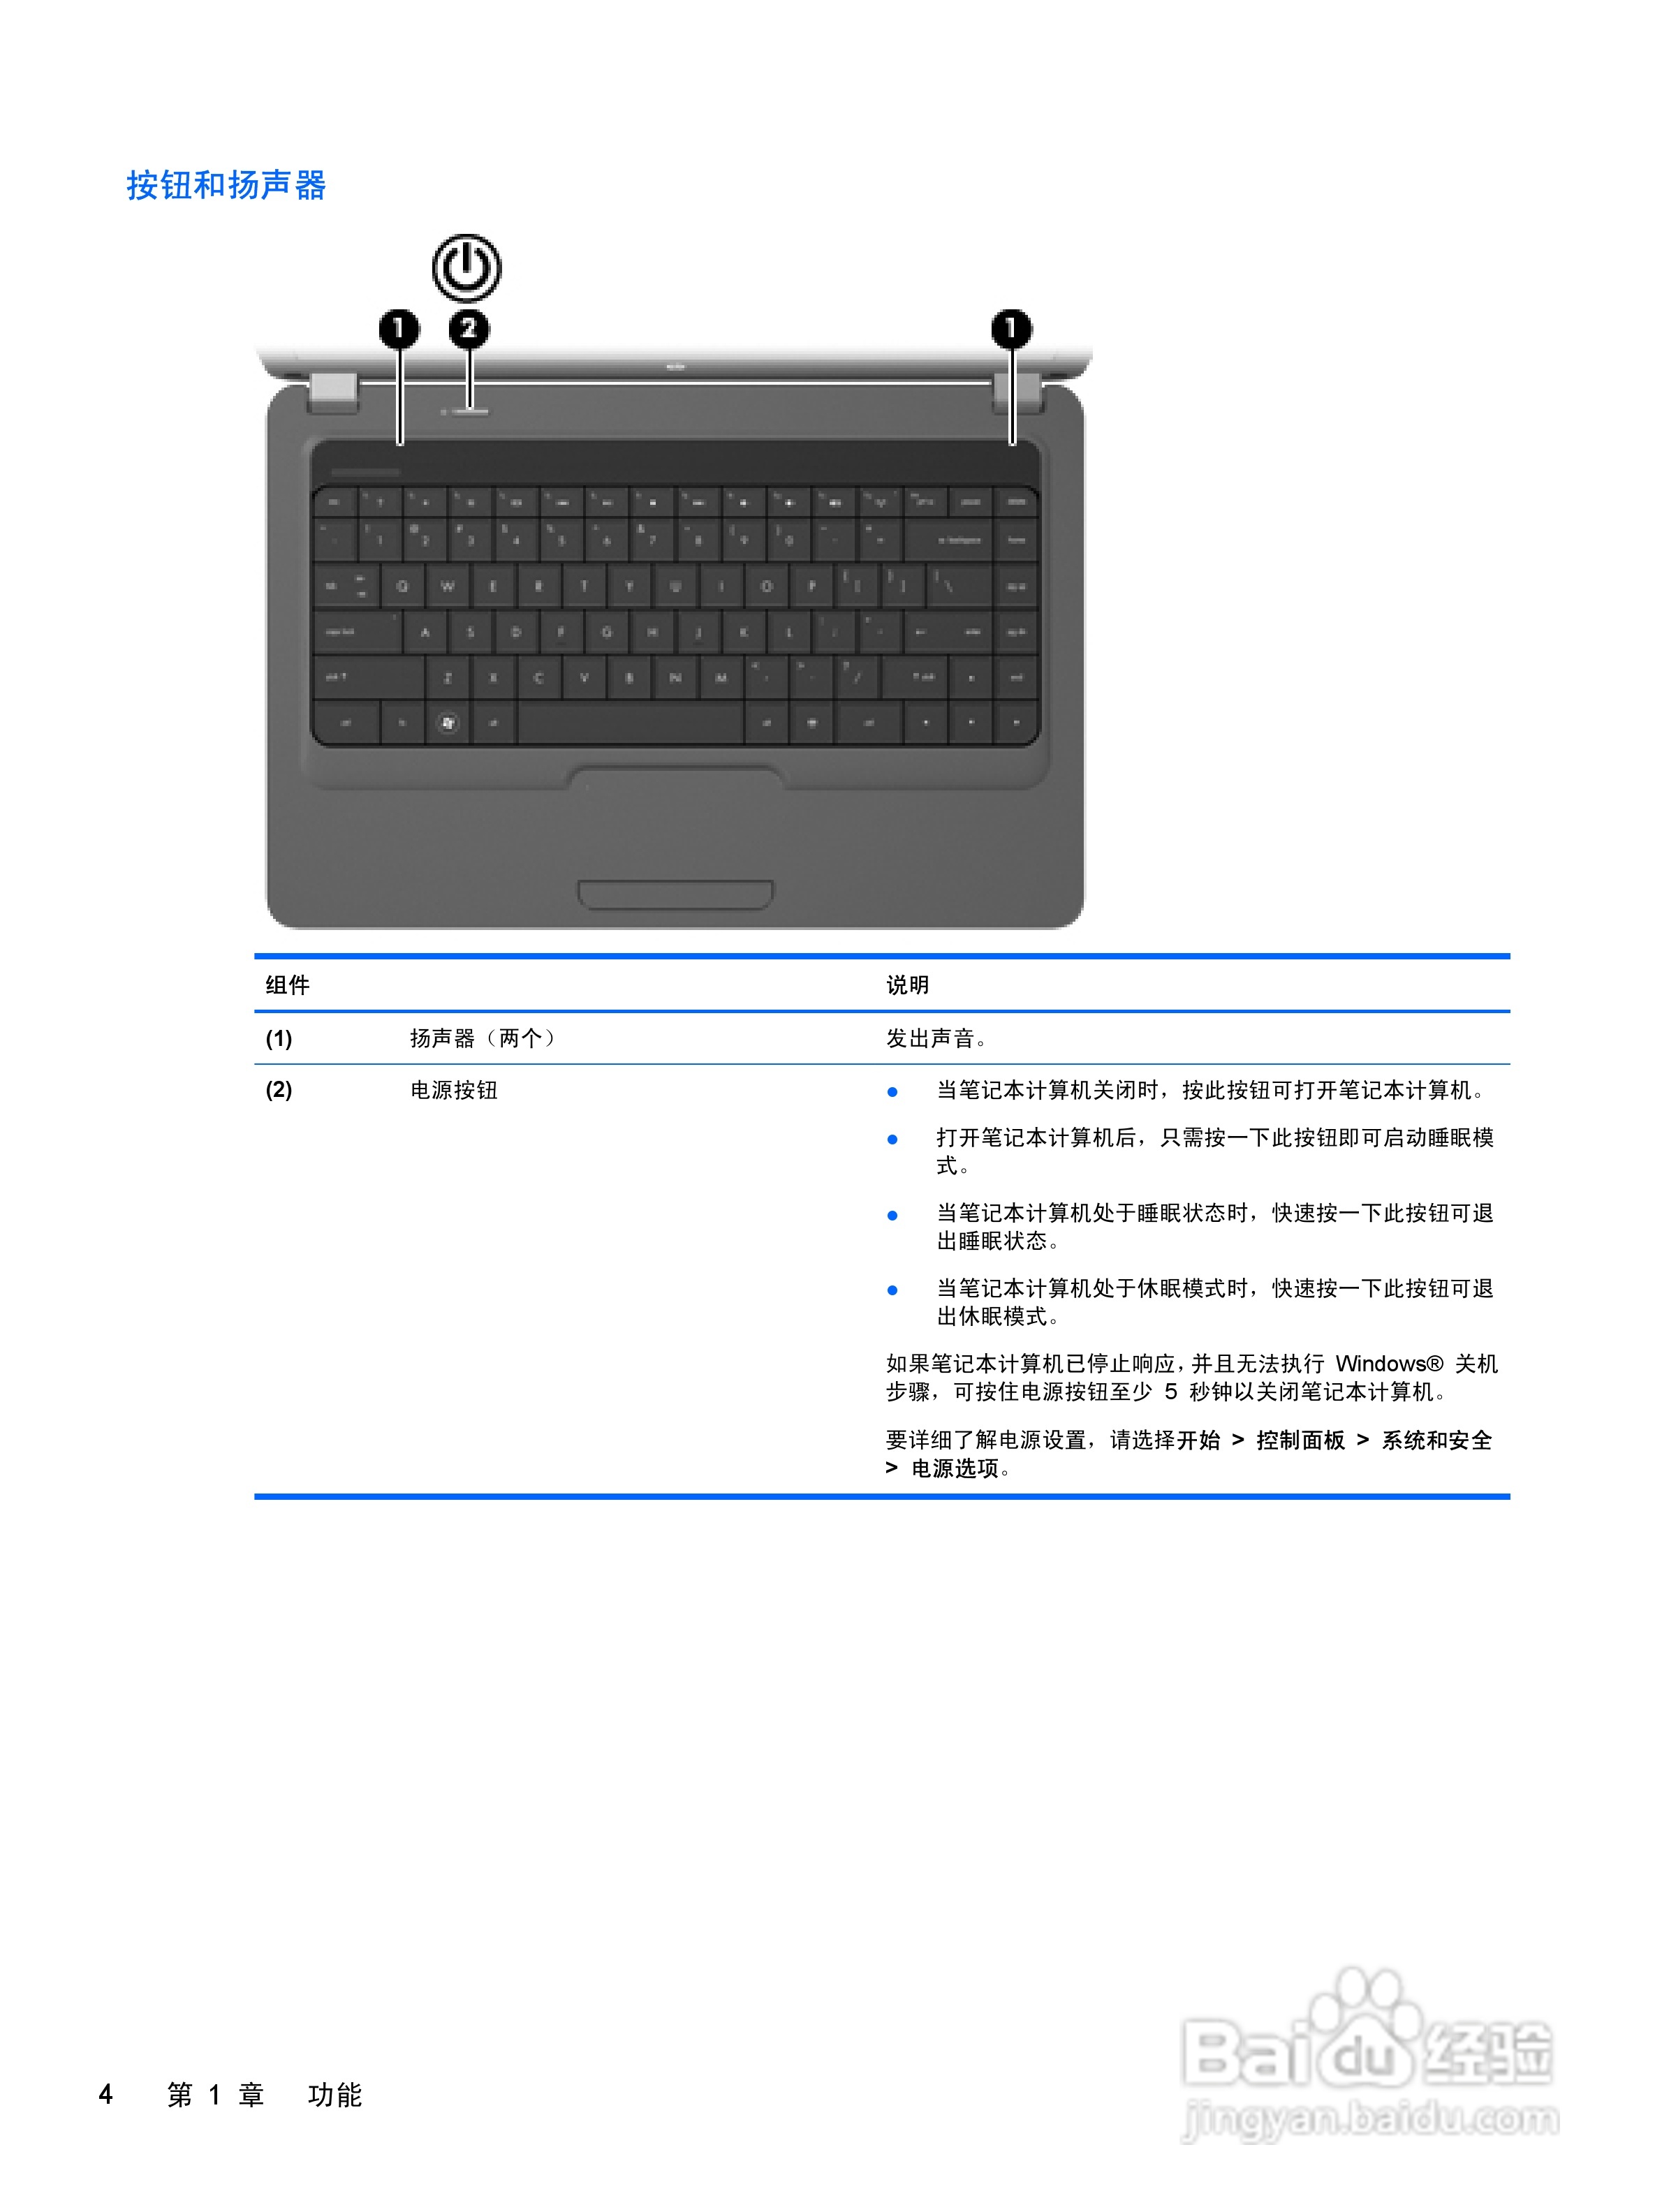 惠普(康柏) HP 2133 Mini-Note PC笔记本电脑说明书:[10]-百度经验